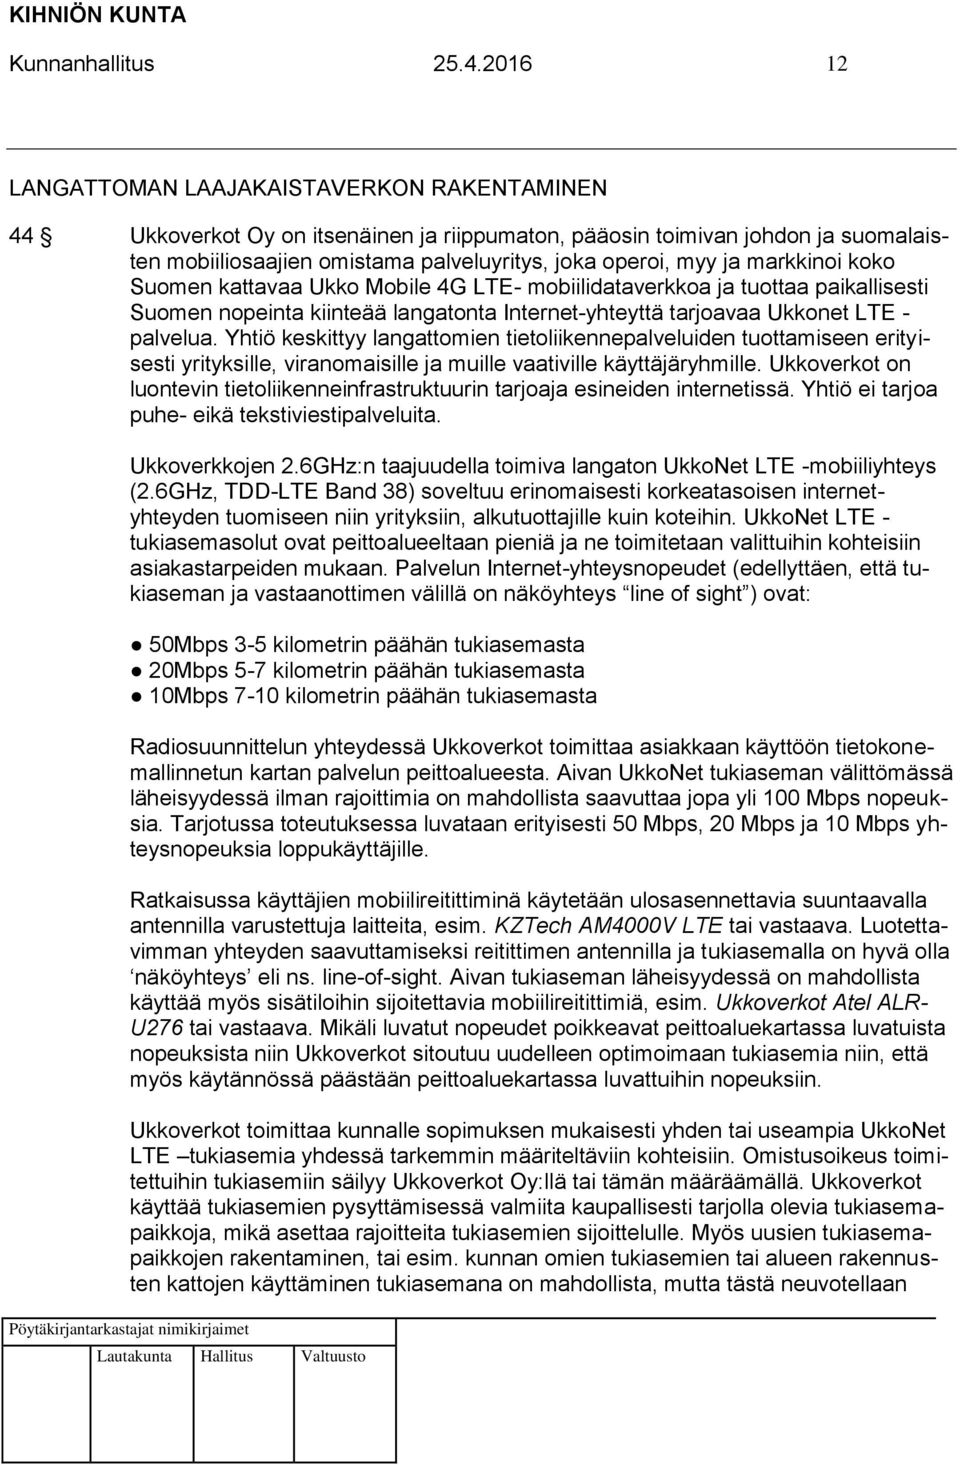 markkinoi koko Suomen kattavaa Ukko Mobile 4G LTE- mobiilidataverkkoa ja tuottaa paikallisesti Suomen nopeinta kiinteää langatonta Internet-yhteyttä tarjoavaa Ukkonet LTE - palvelua.